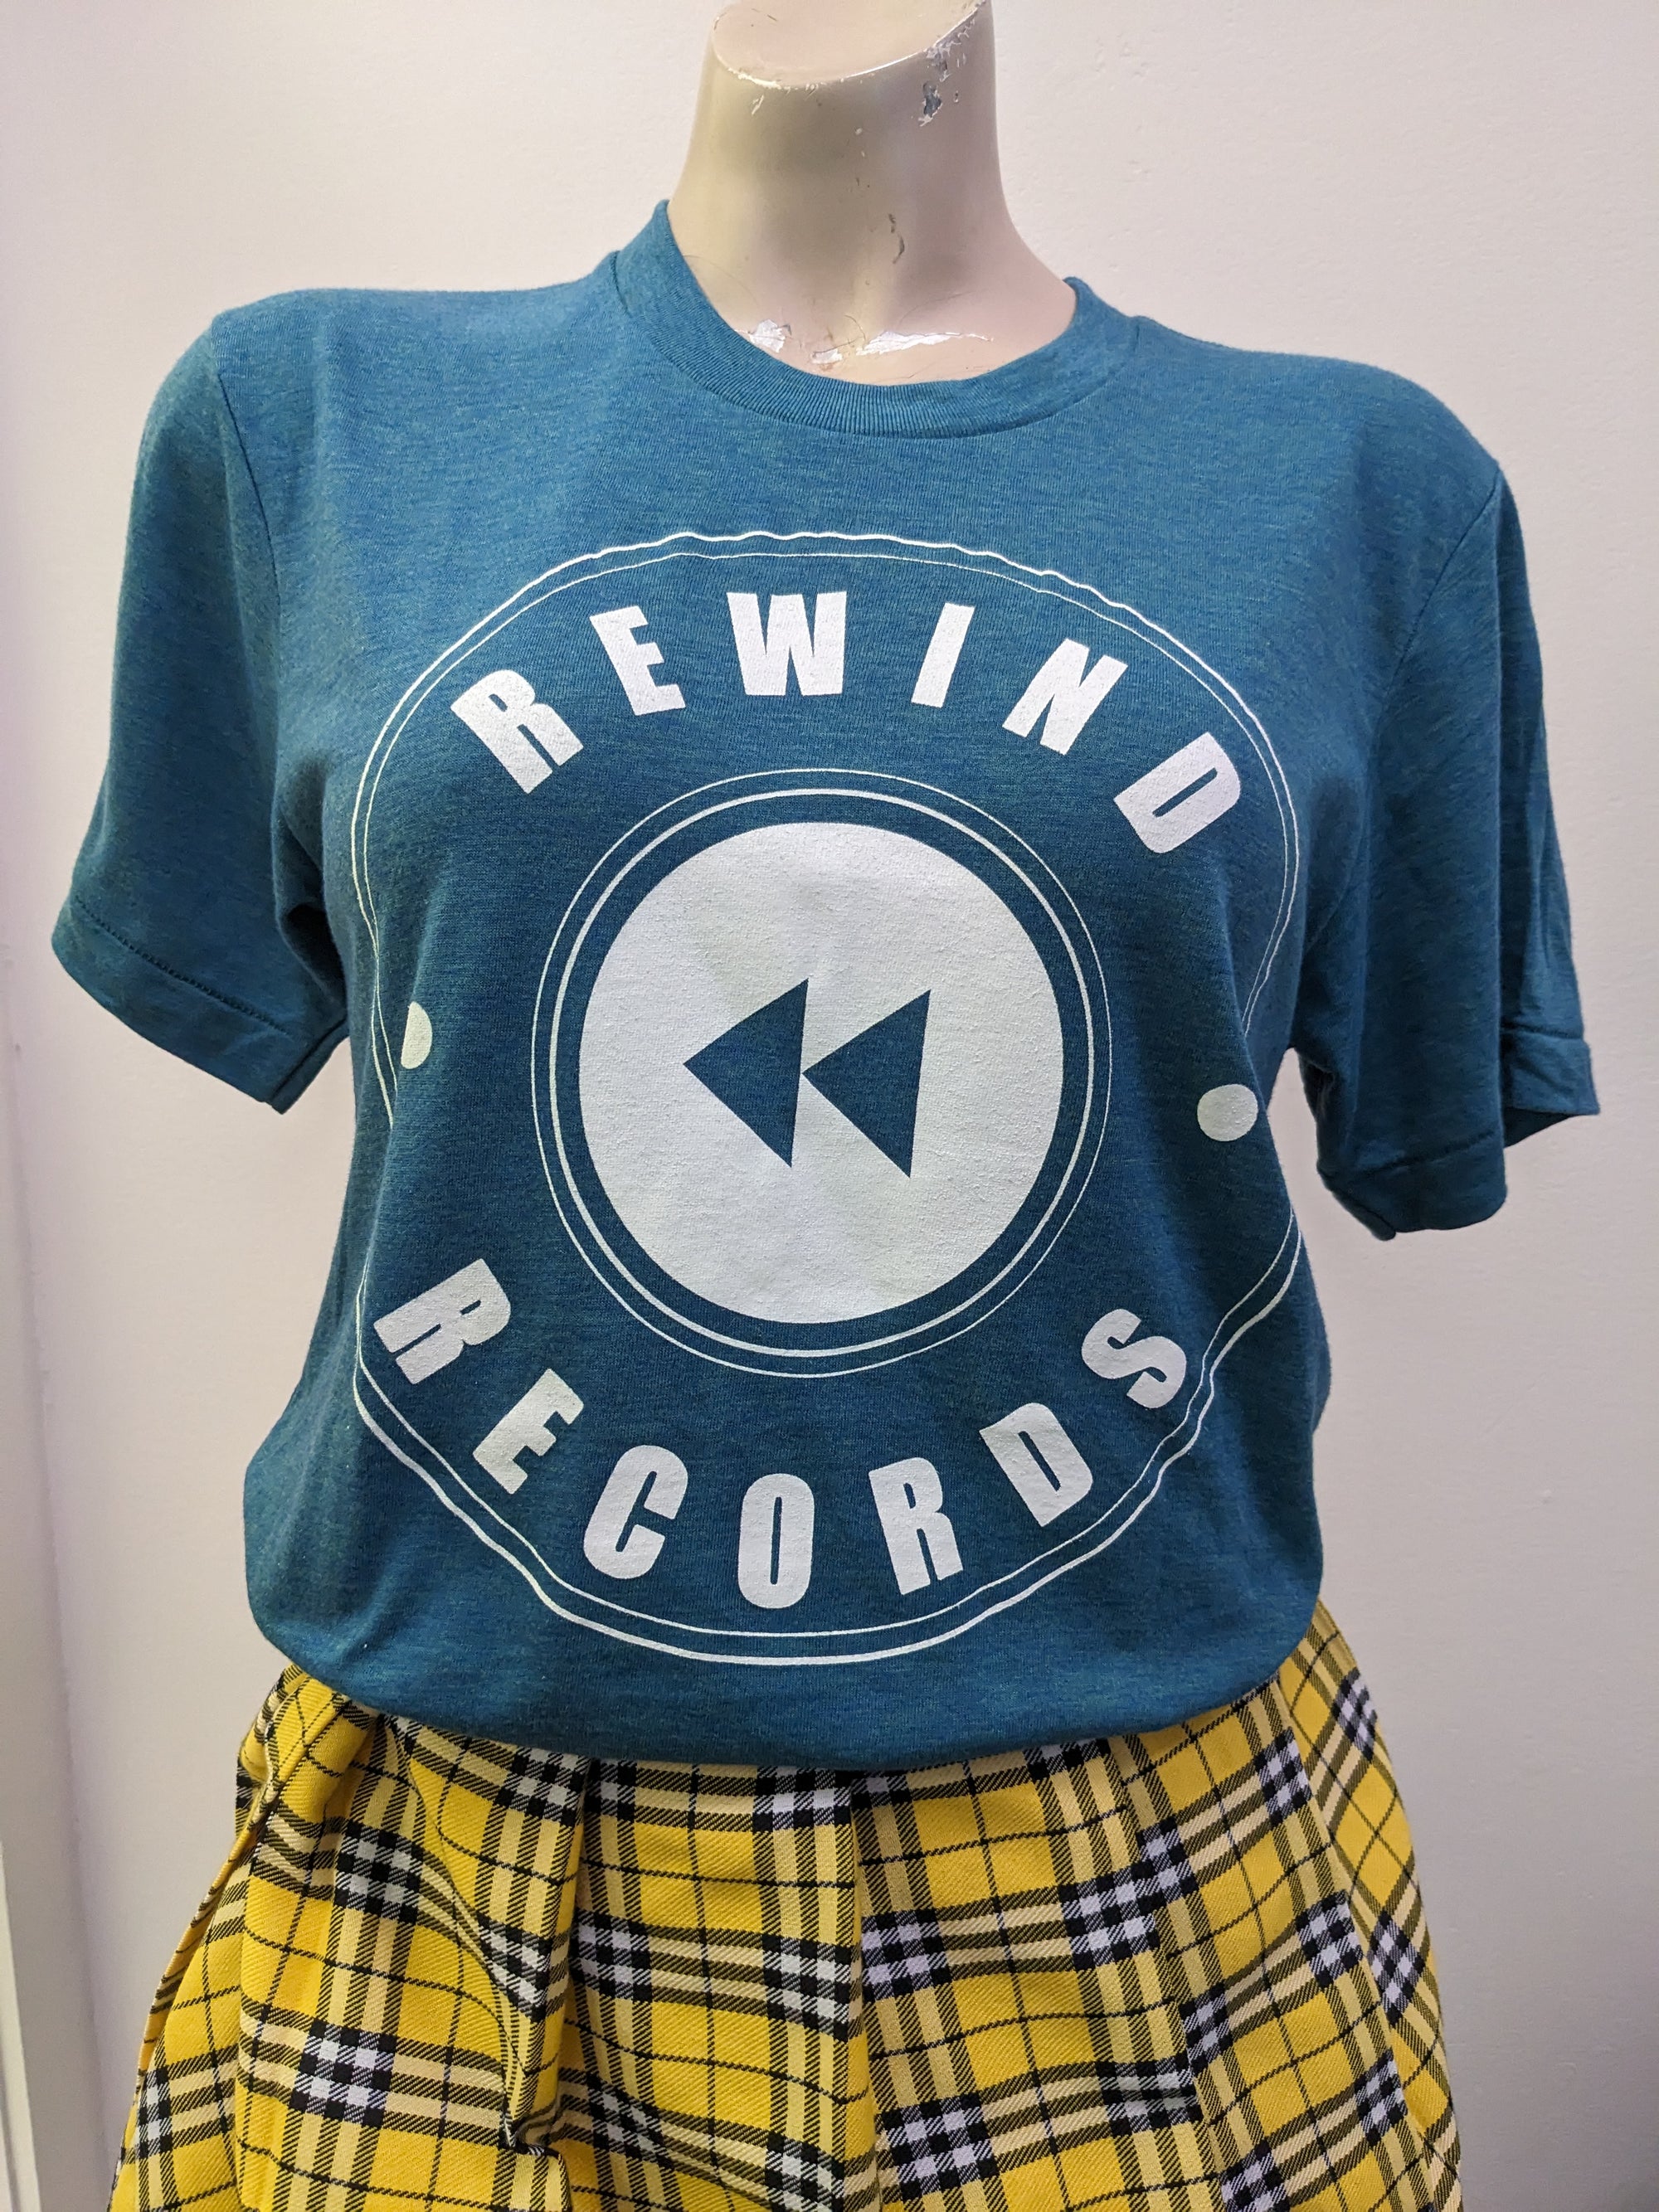 Rewind Records - XS